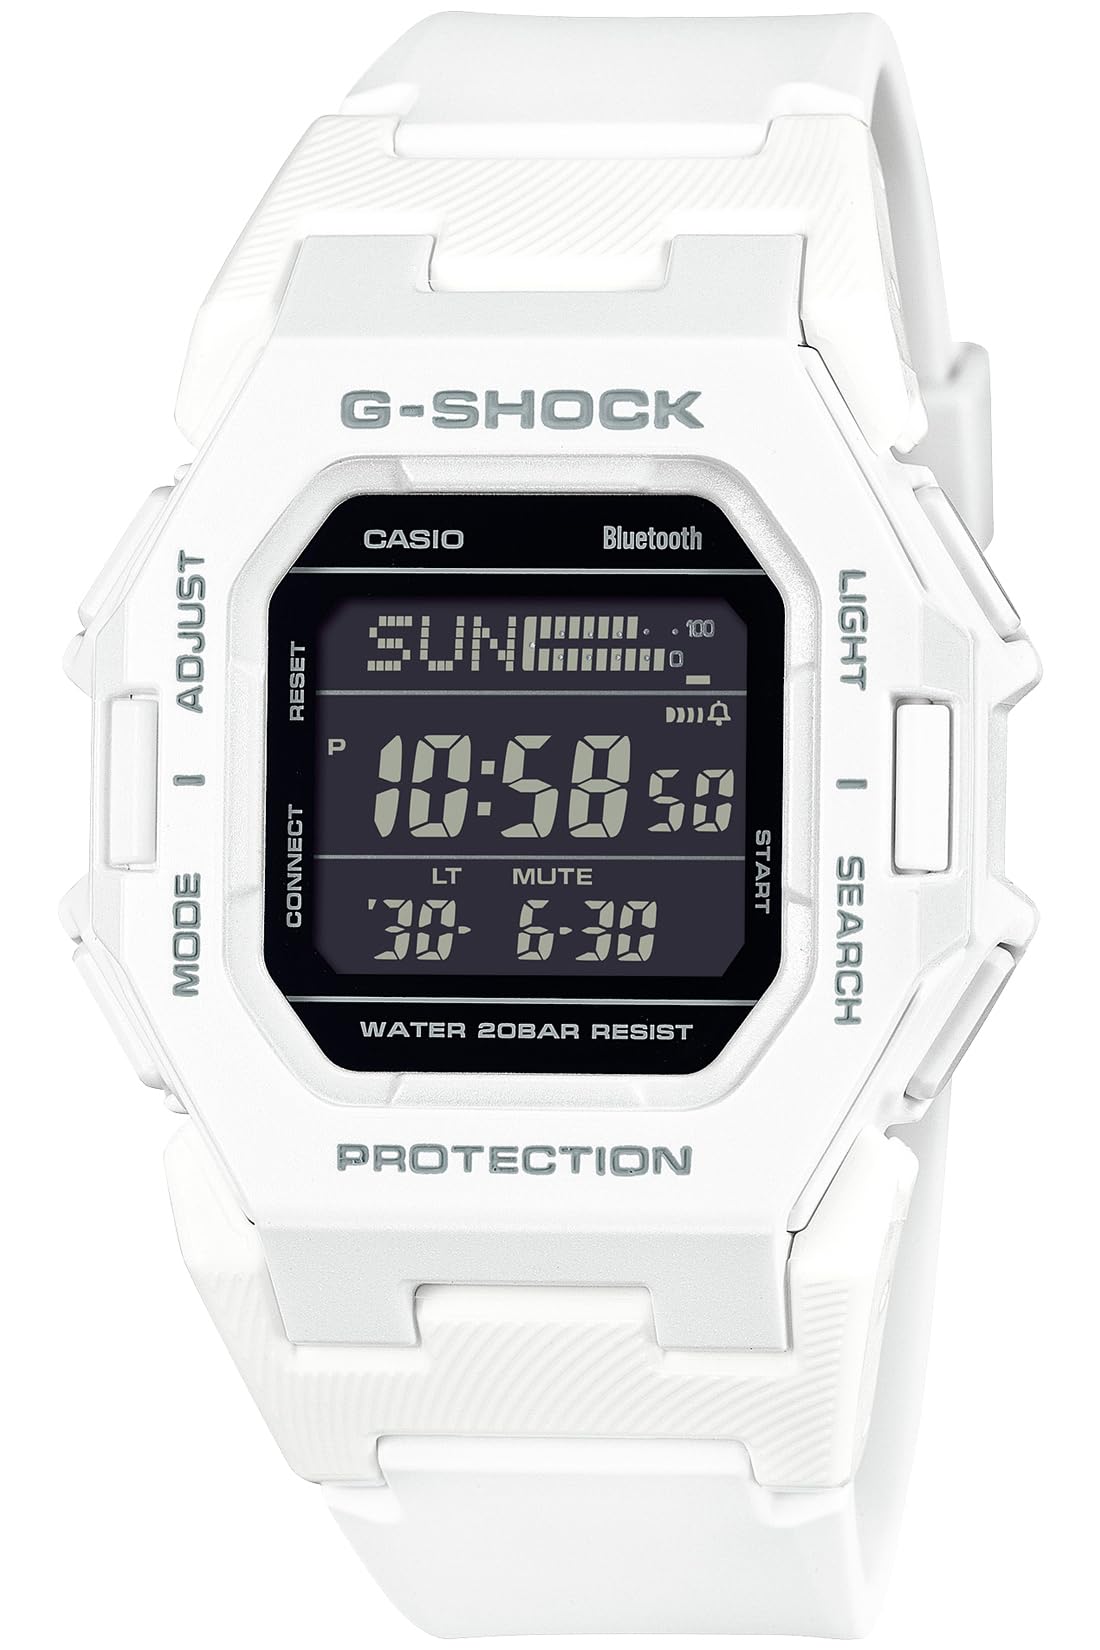 ジーショック [カシオ] 腕時計 【国内正規品】Bluetooth搭載 歩数計測機能 GD-B500-7JF メンズ ホワイト - BanzaiHobby